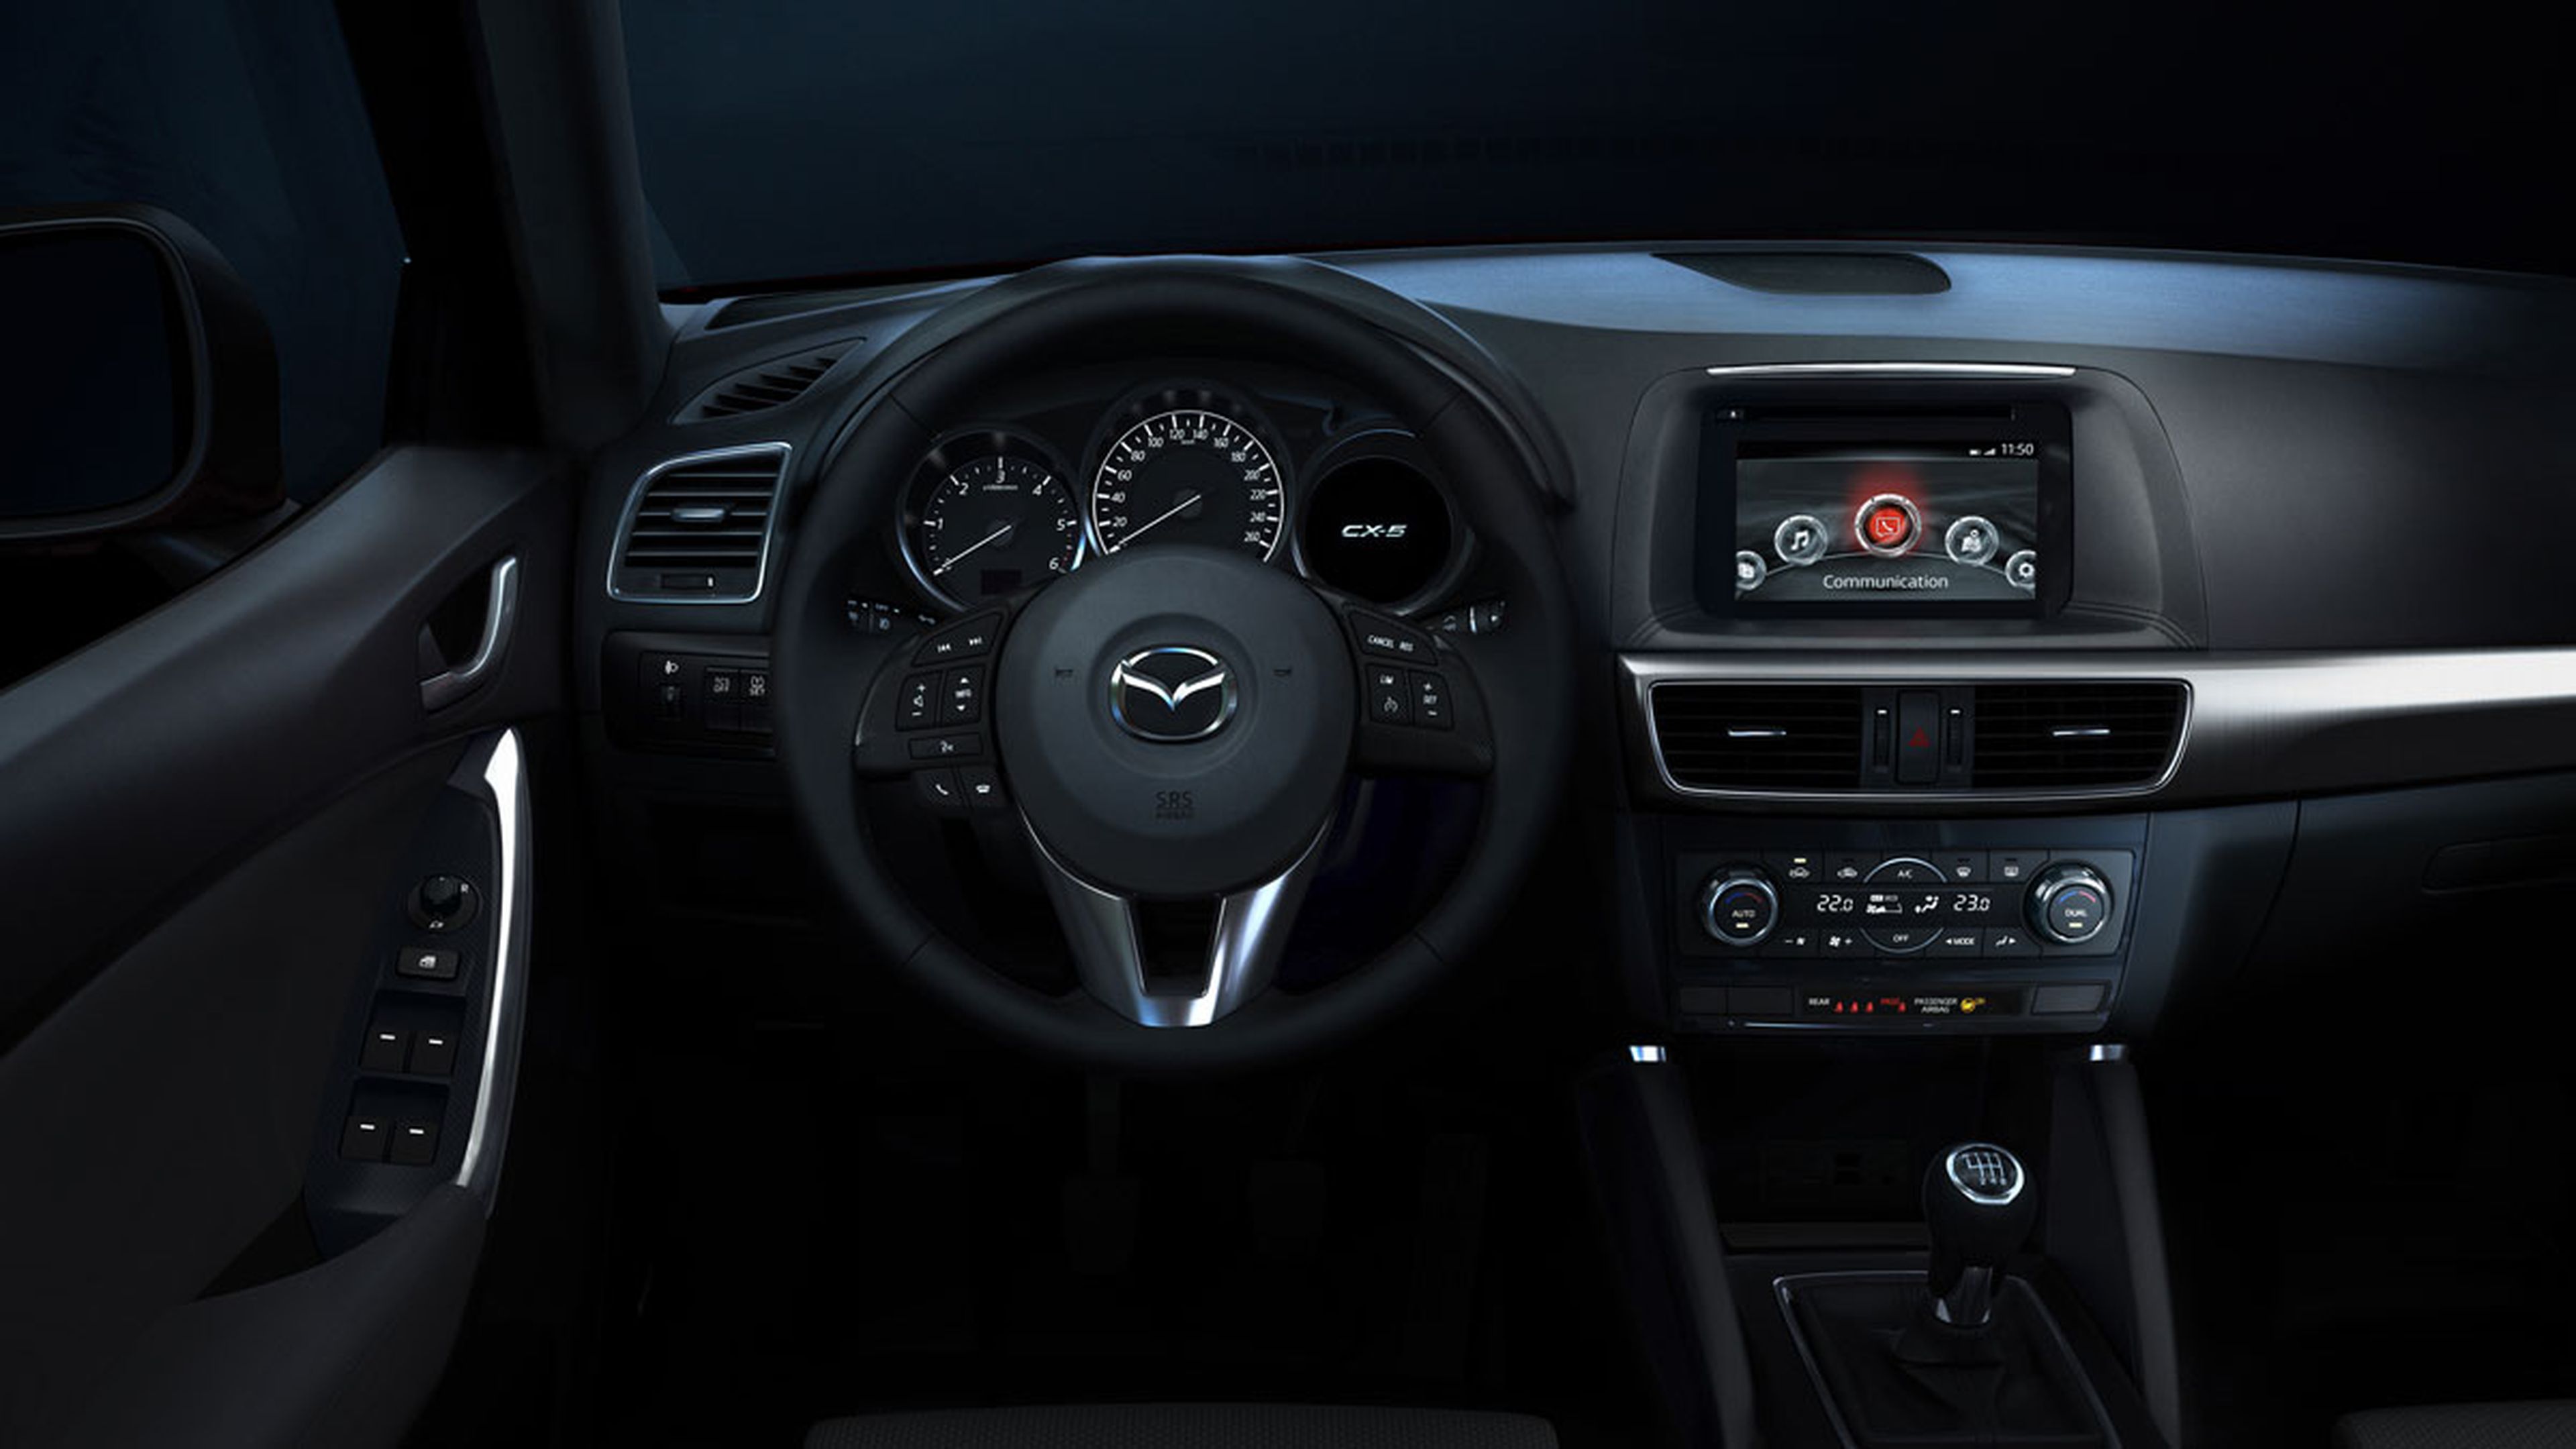 Mazda CX-5 Black Tech Edition: atrapa todas las miradas